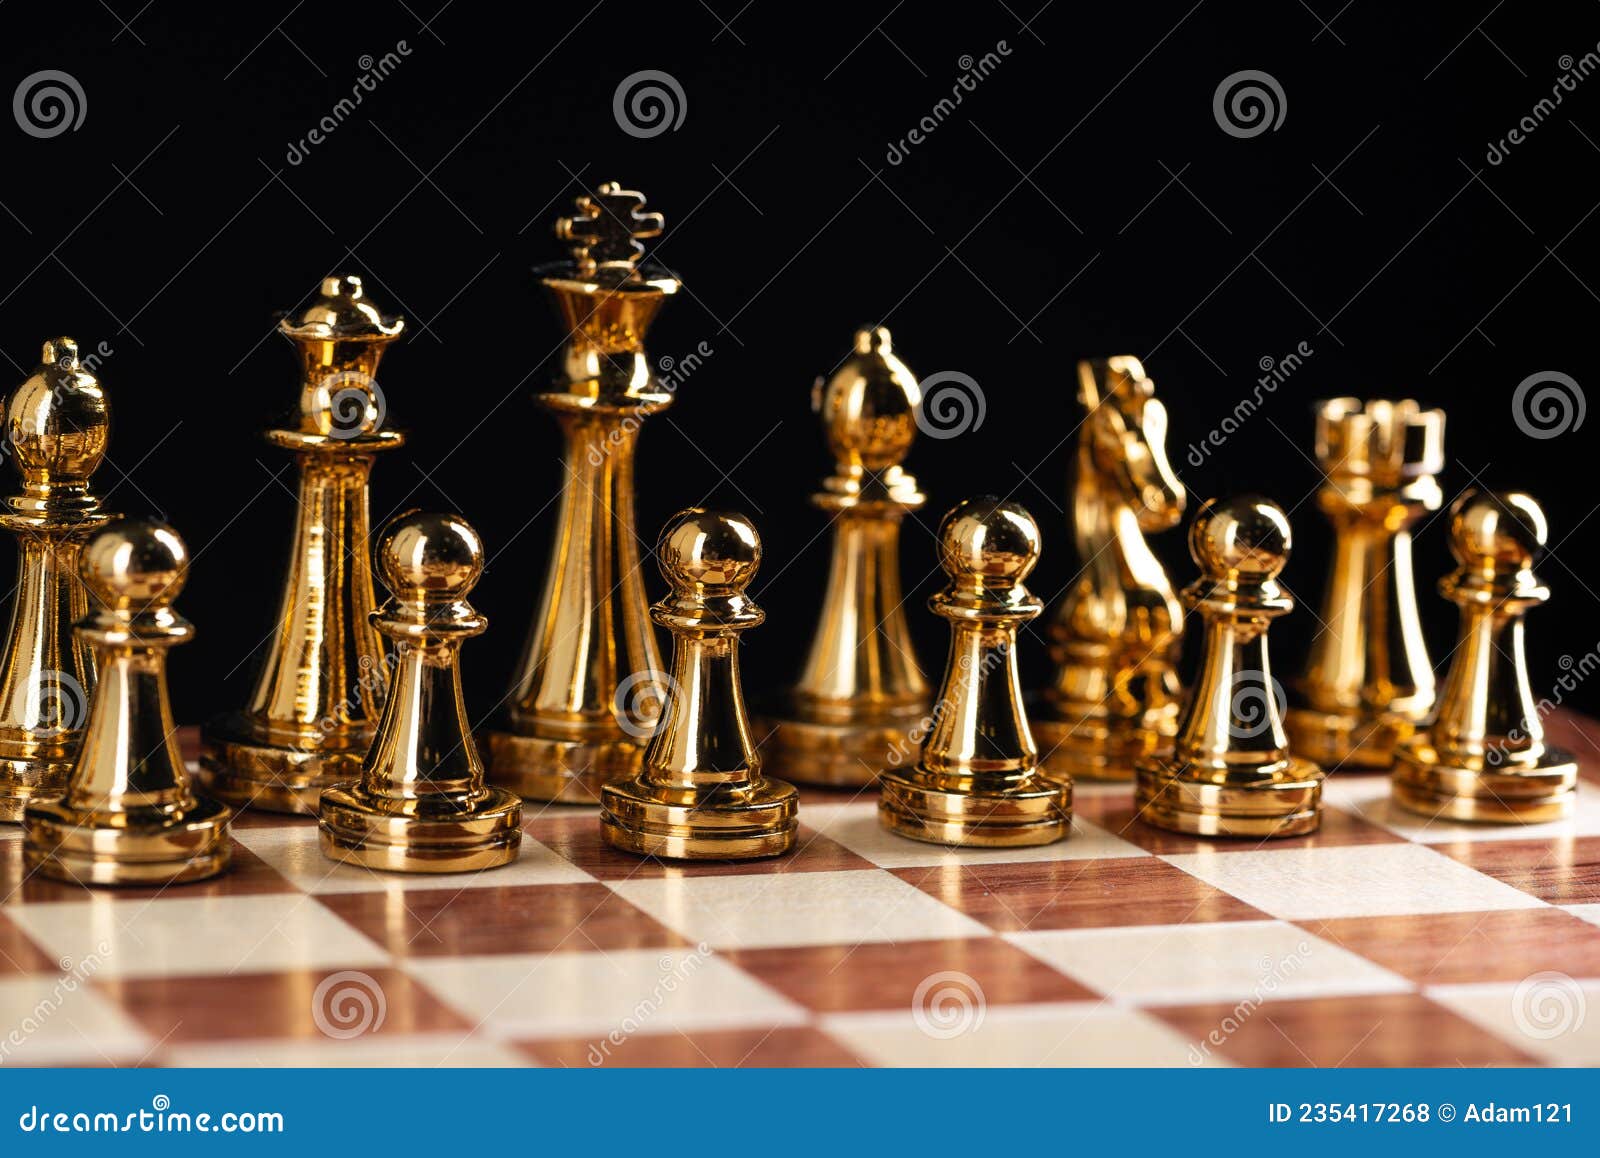 Equipe de xadrez em pé no tabuleiro.